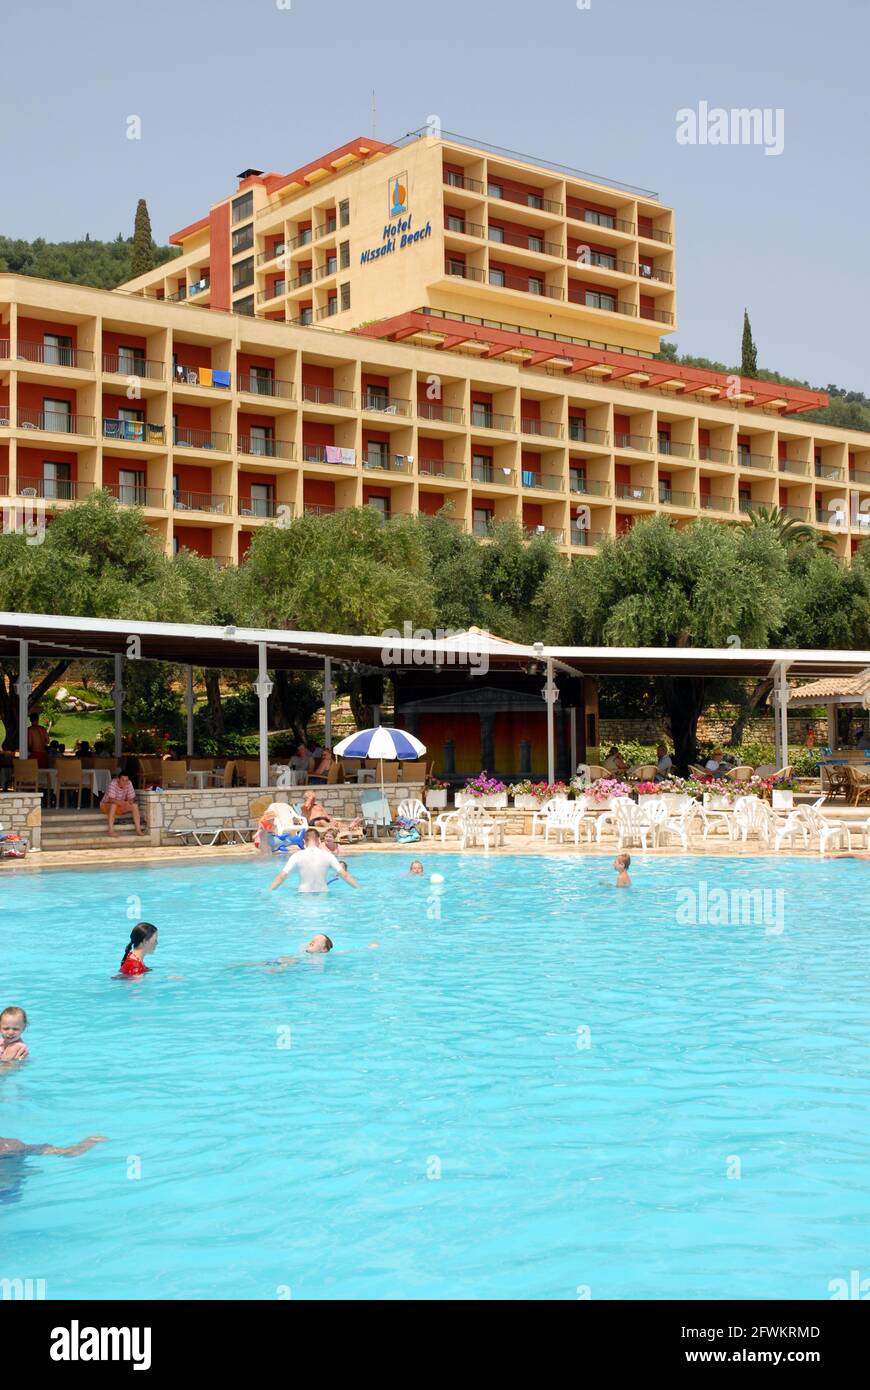 People enjoying a casual swim in the hotel pool, Nissaki Beach, Corfu, Greece Stock Photo